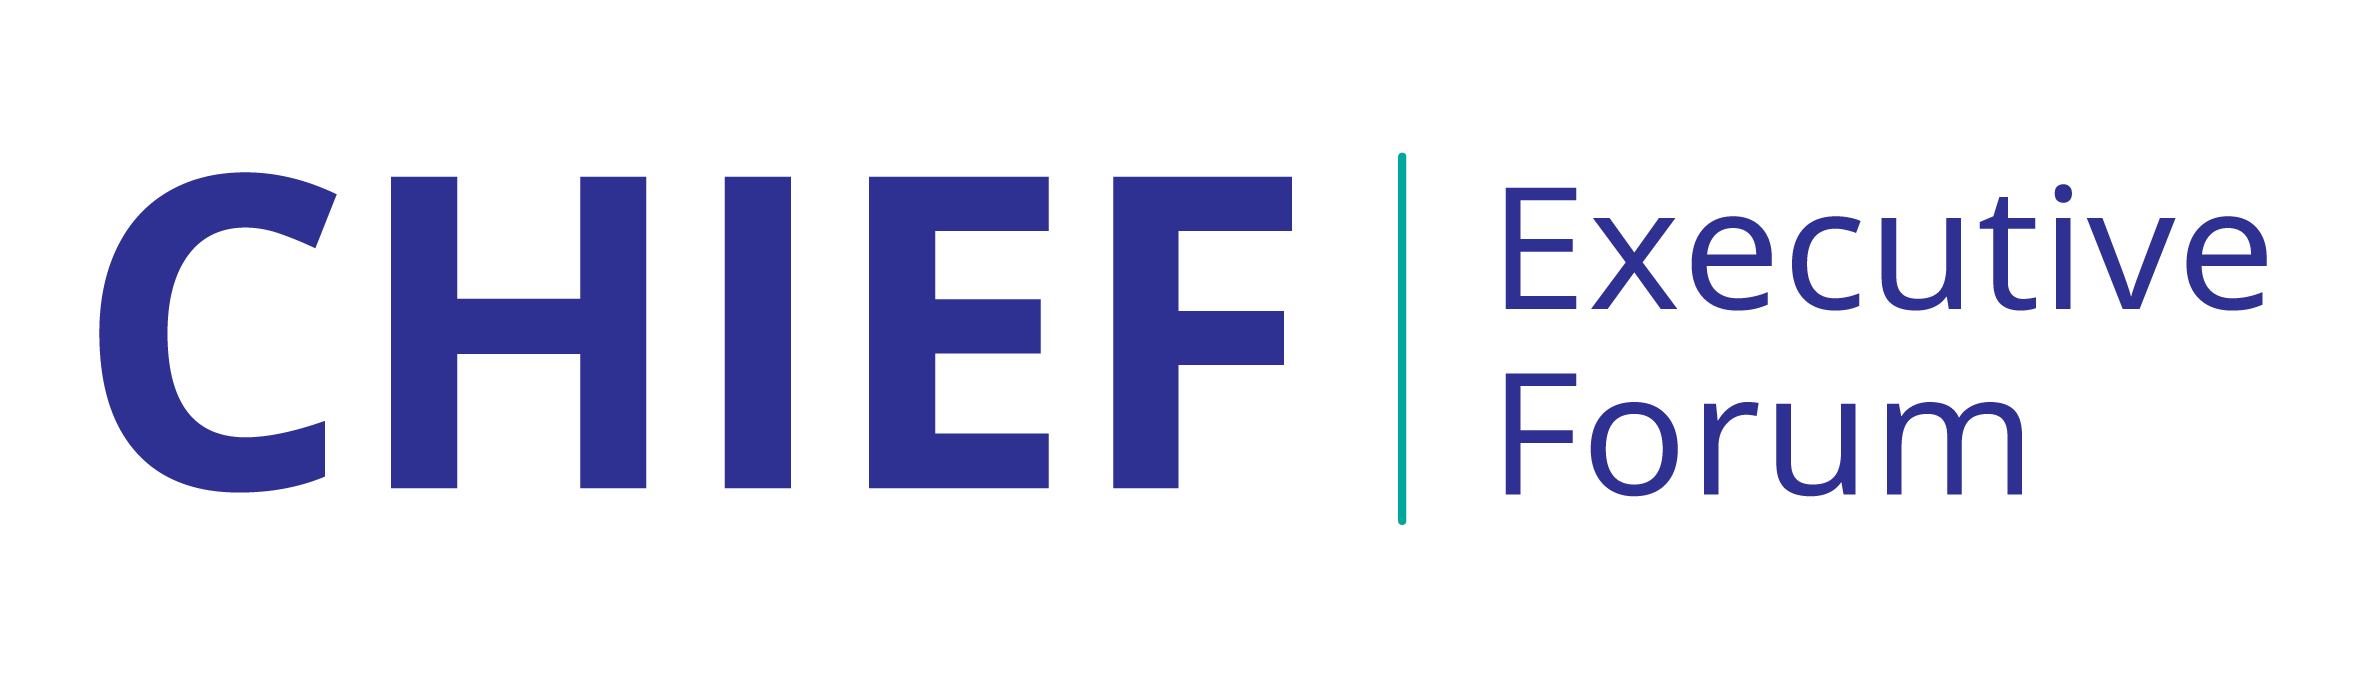 CHIEF Executive Forum logo-01